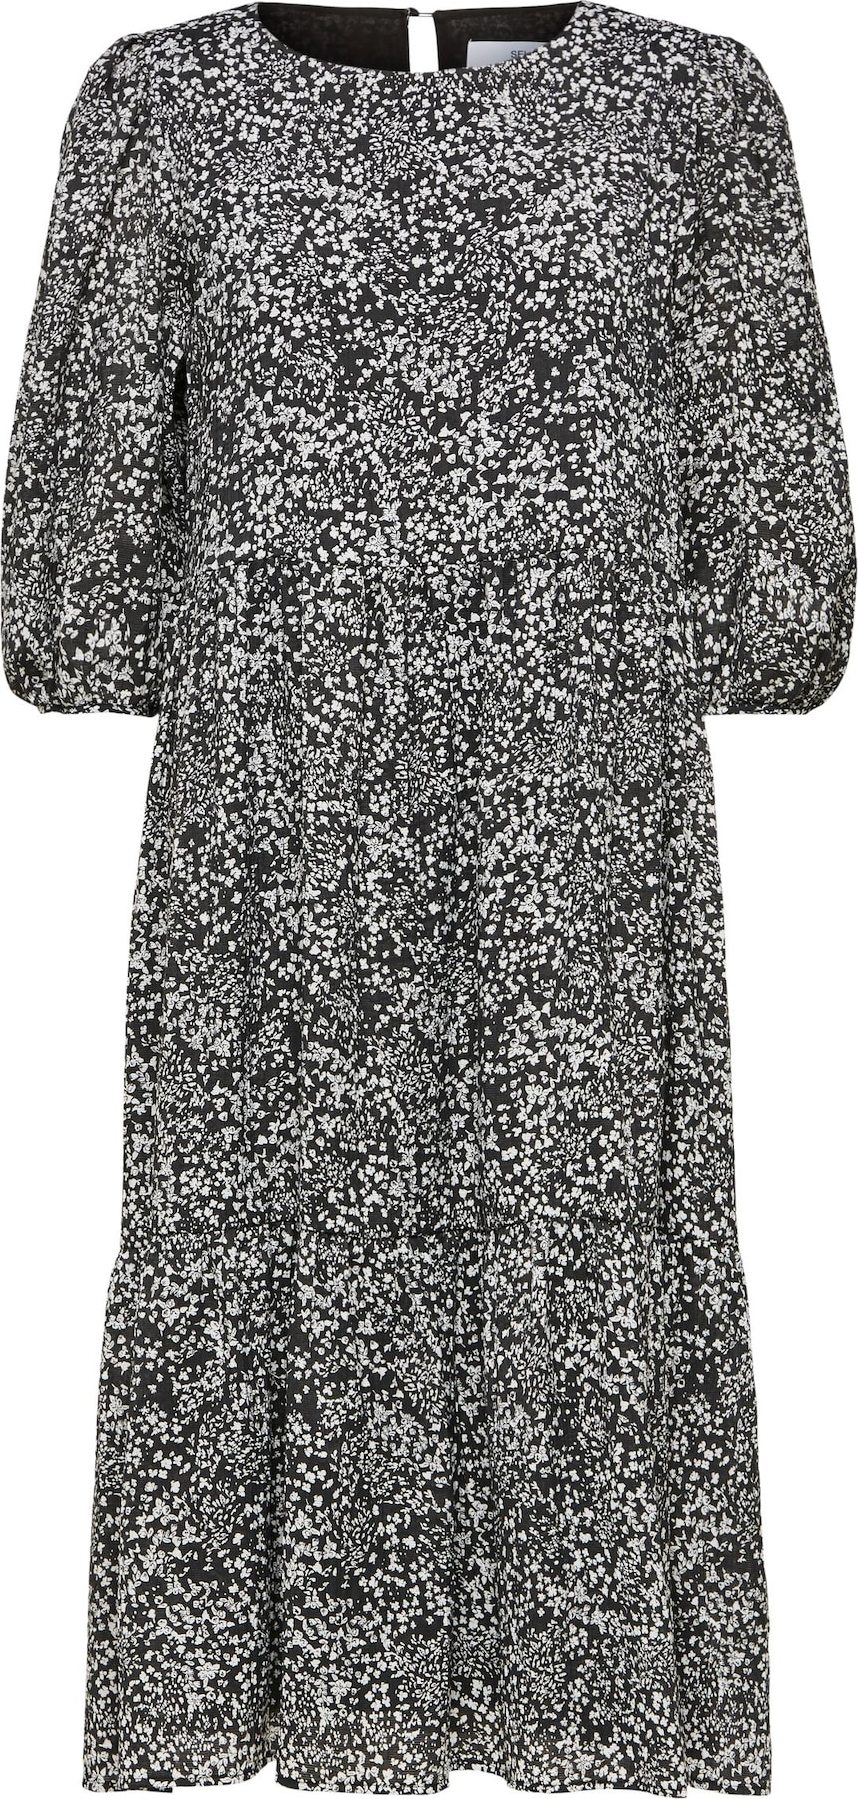 SELECTED FEMME Košilové šaty 'Viole' černá / bílá / světle šedá